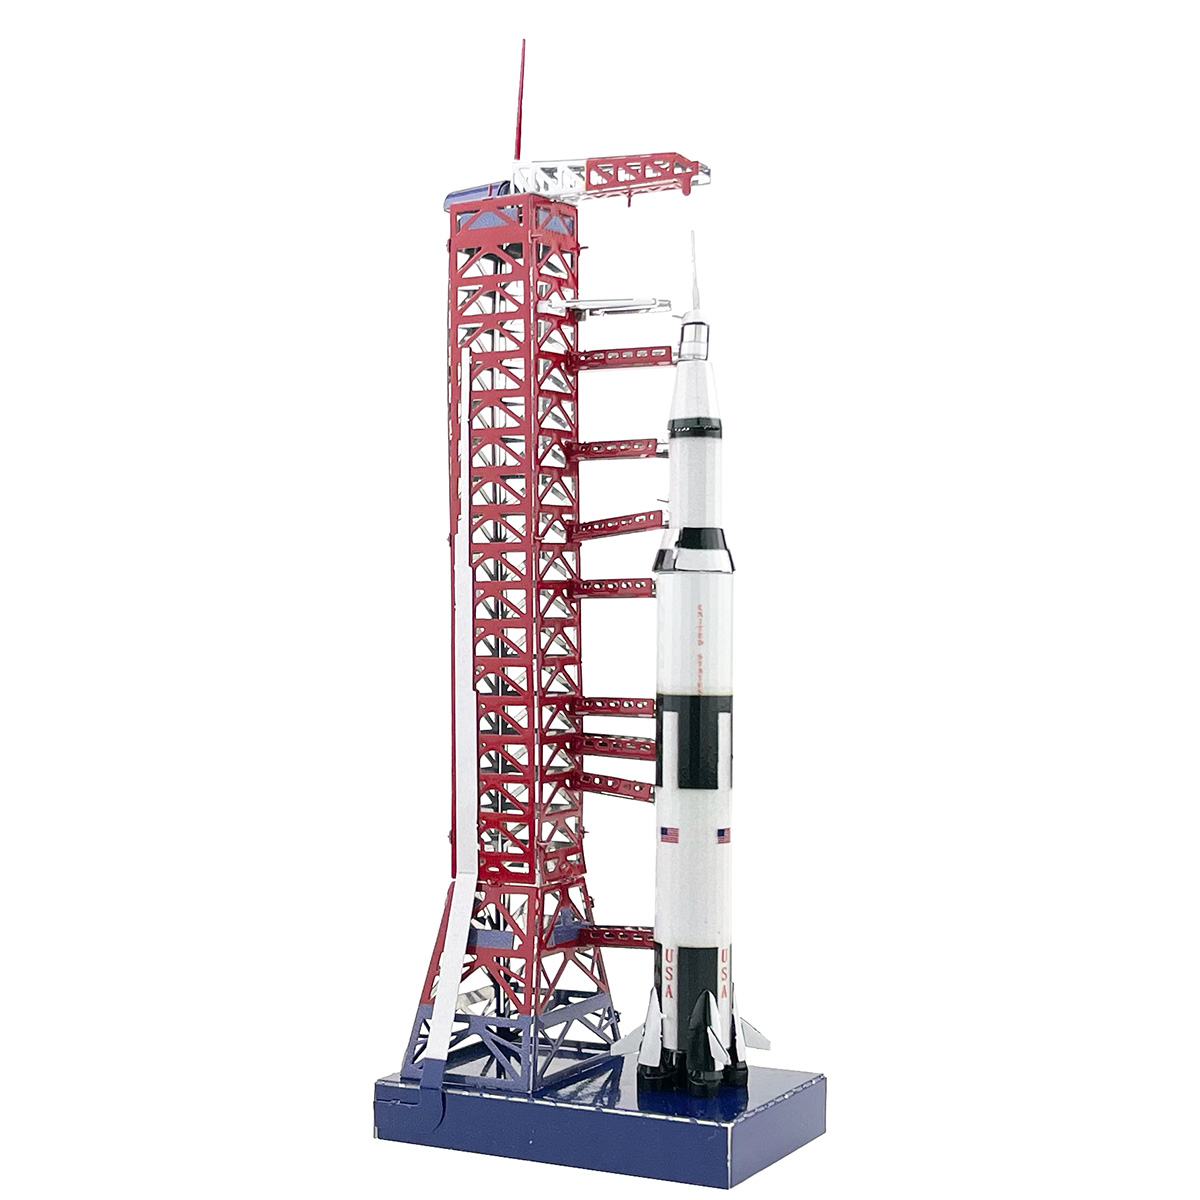 狂模登月土星五号火箭发射台金属拼图 DIY拼装模型-图1